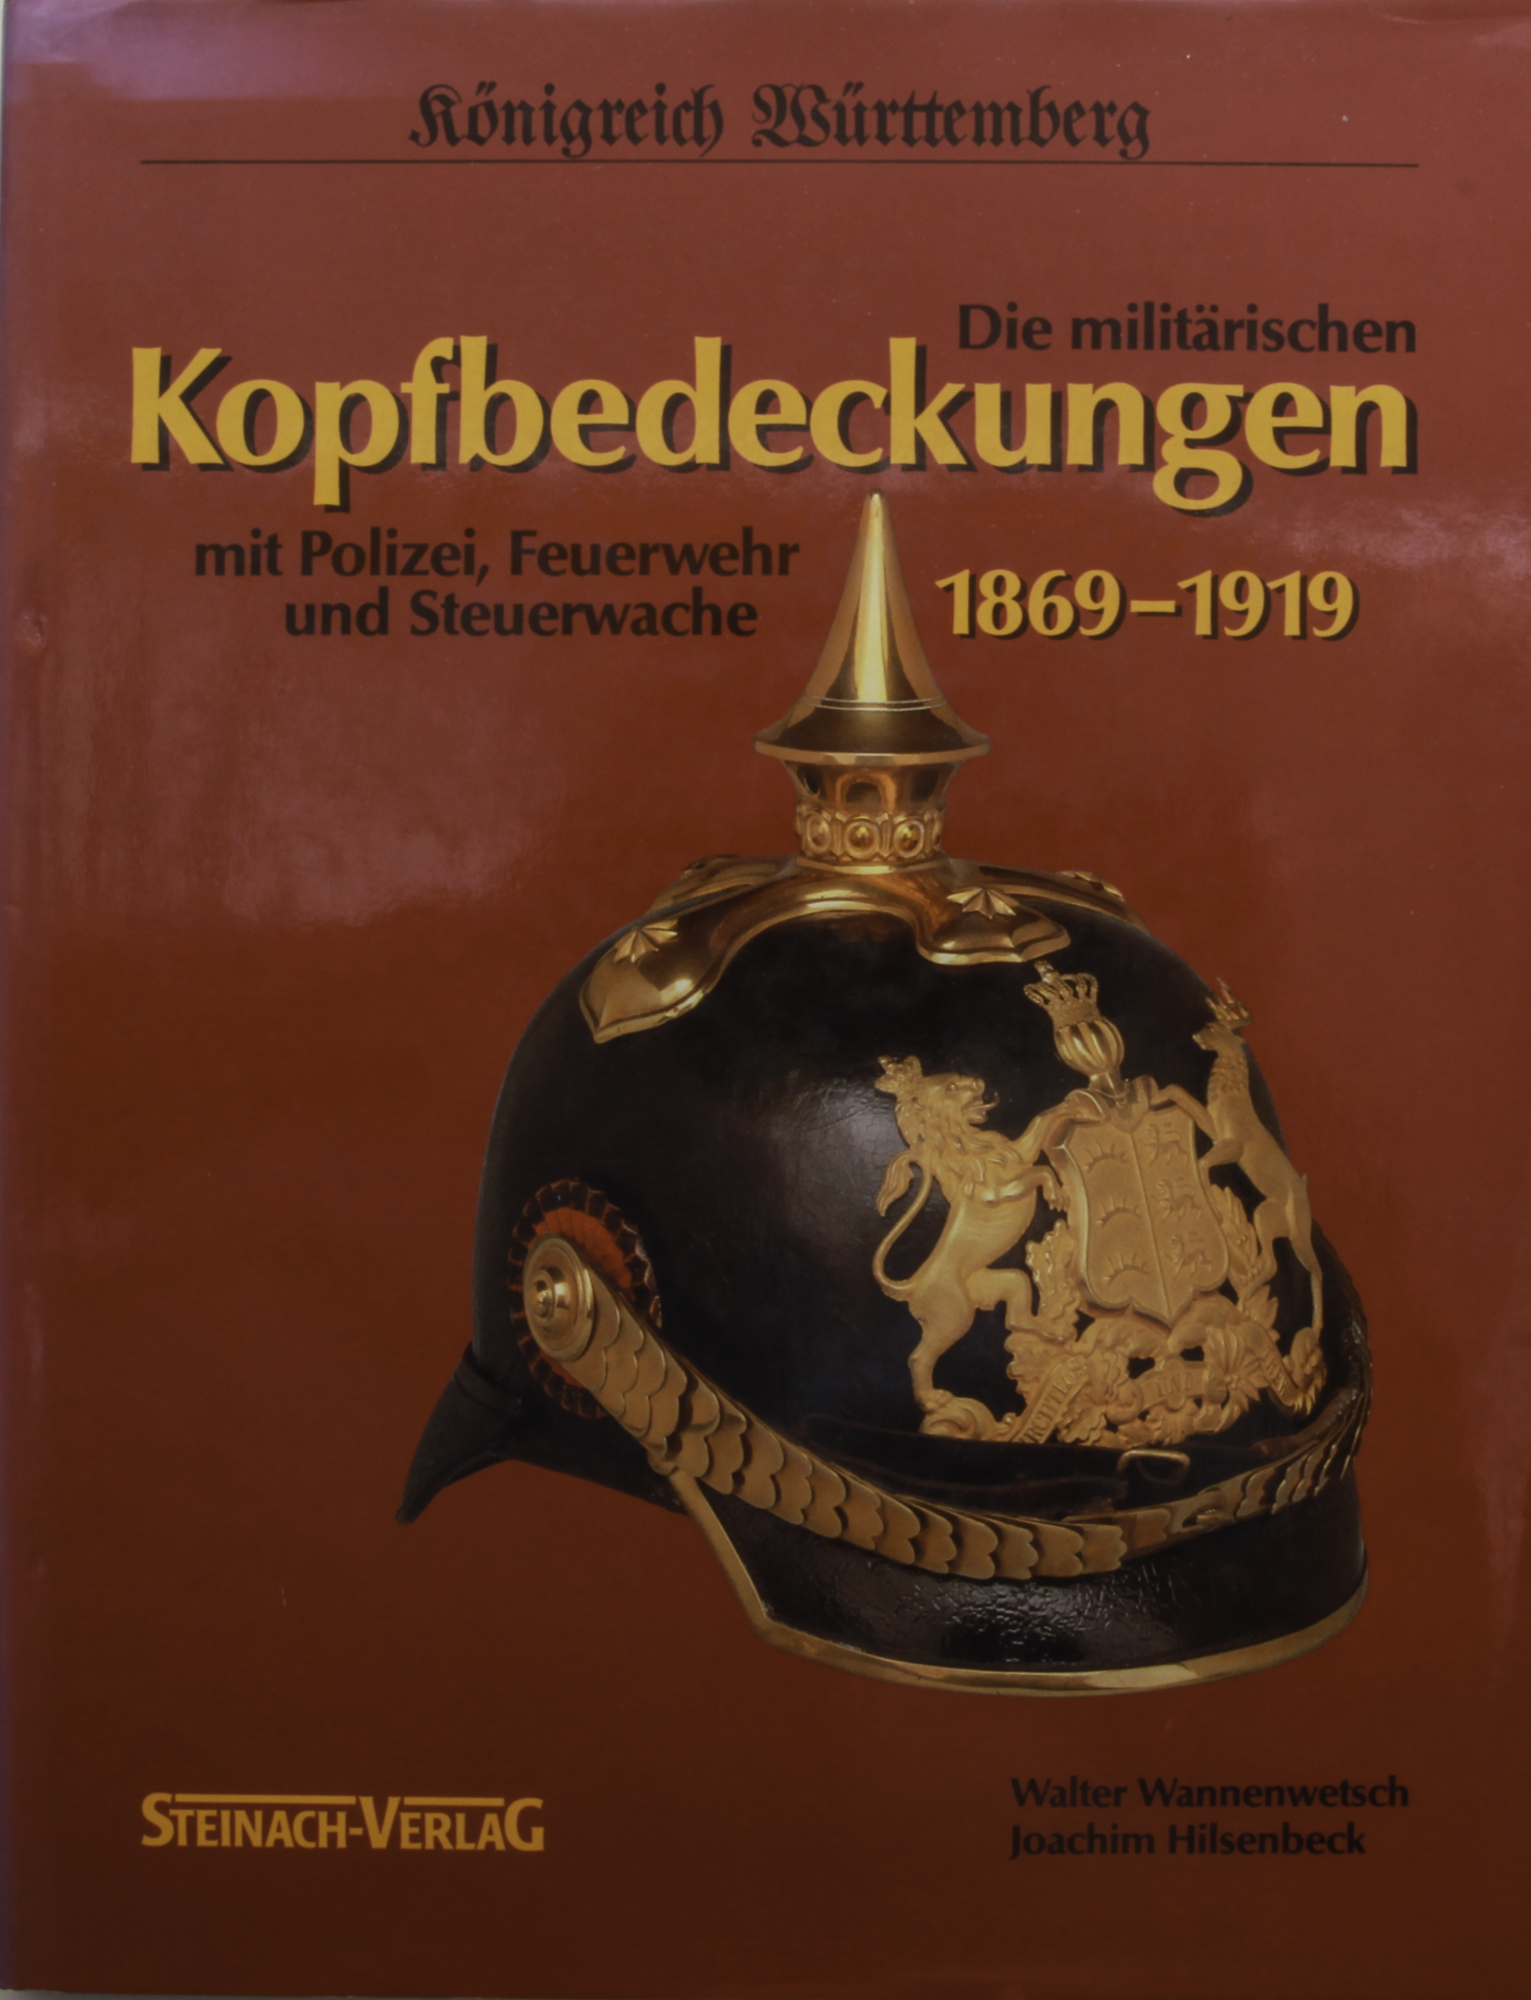 Königreich Württemberg, Kopfbedeckungen 1869 – 1919